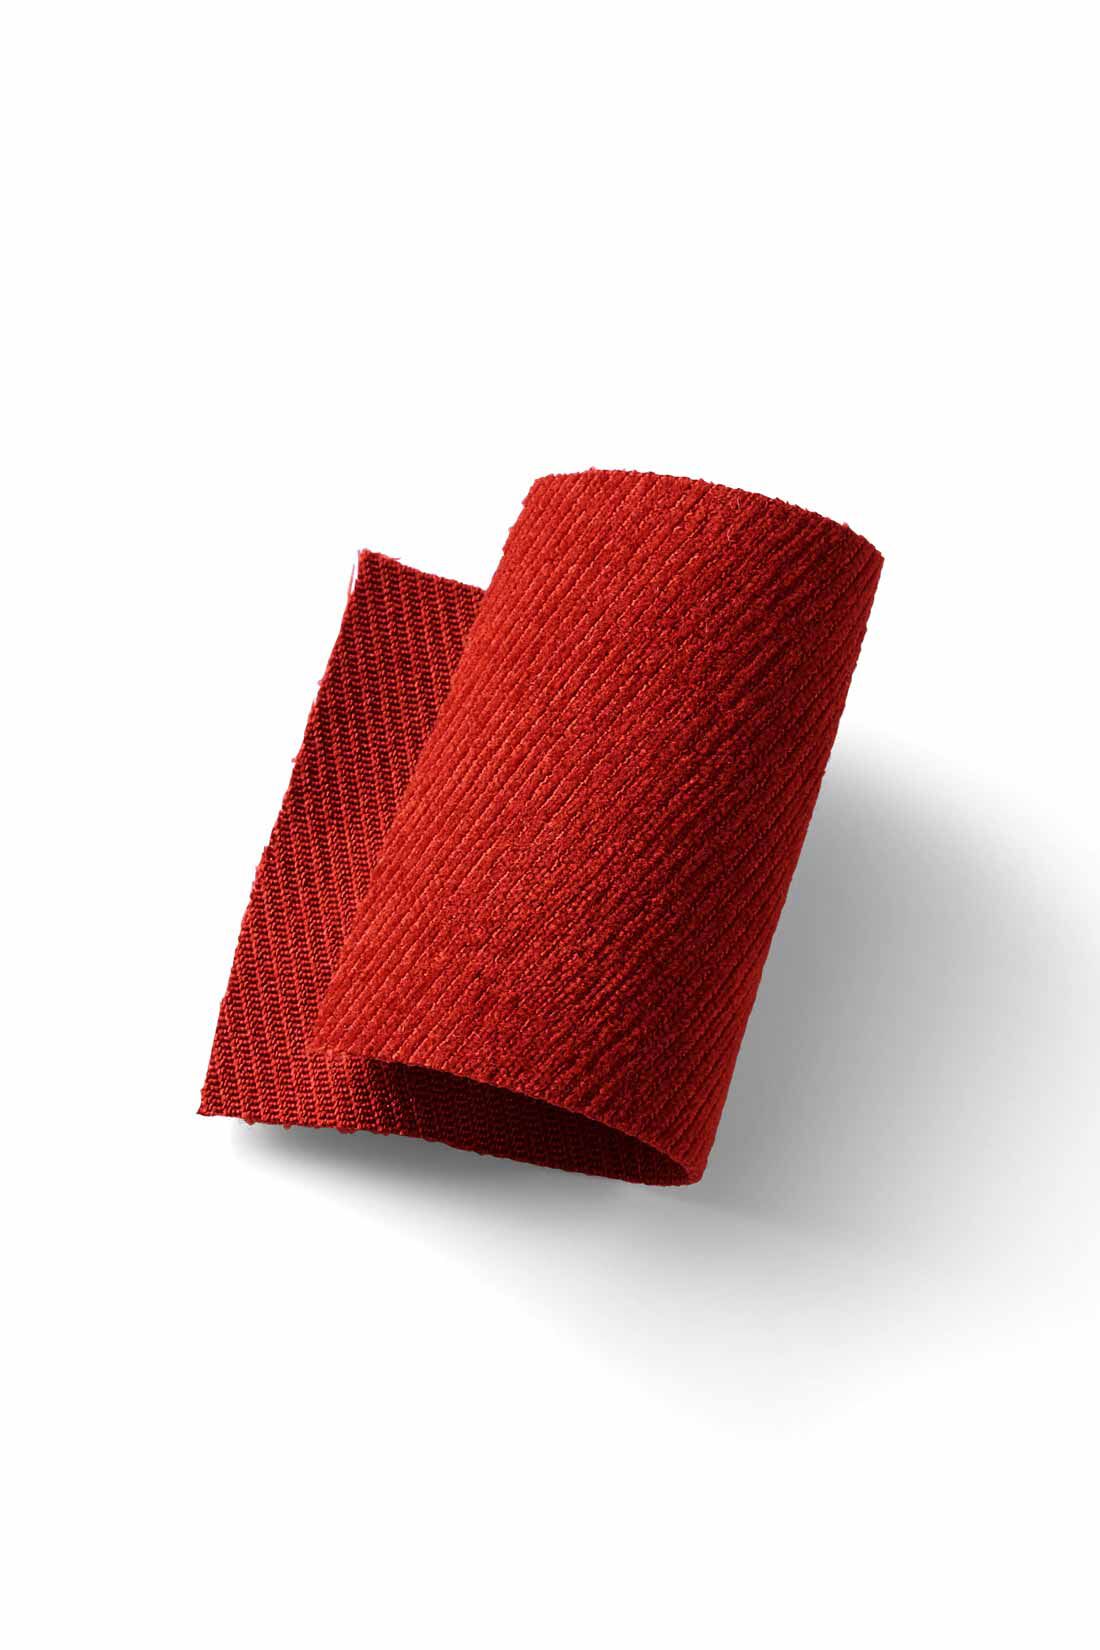 MEDE19F|MEDE19F　ベルテッドカラータックパンツ〈アイボリー〉|しなやかで落ち感のある布はくに起毛をかけた、スエードライクな素材です。適度な厚みがあり、暖かな表情が冬らしい。